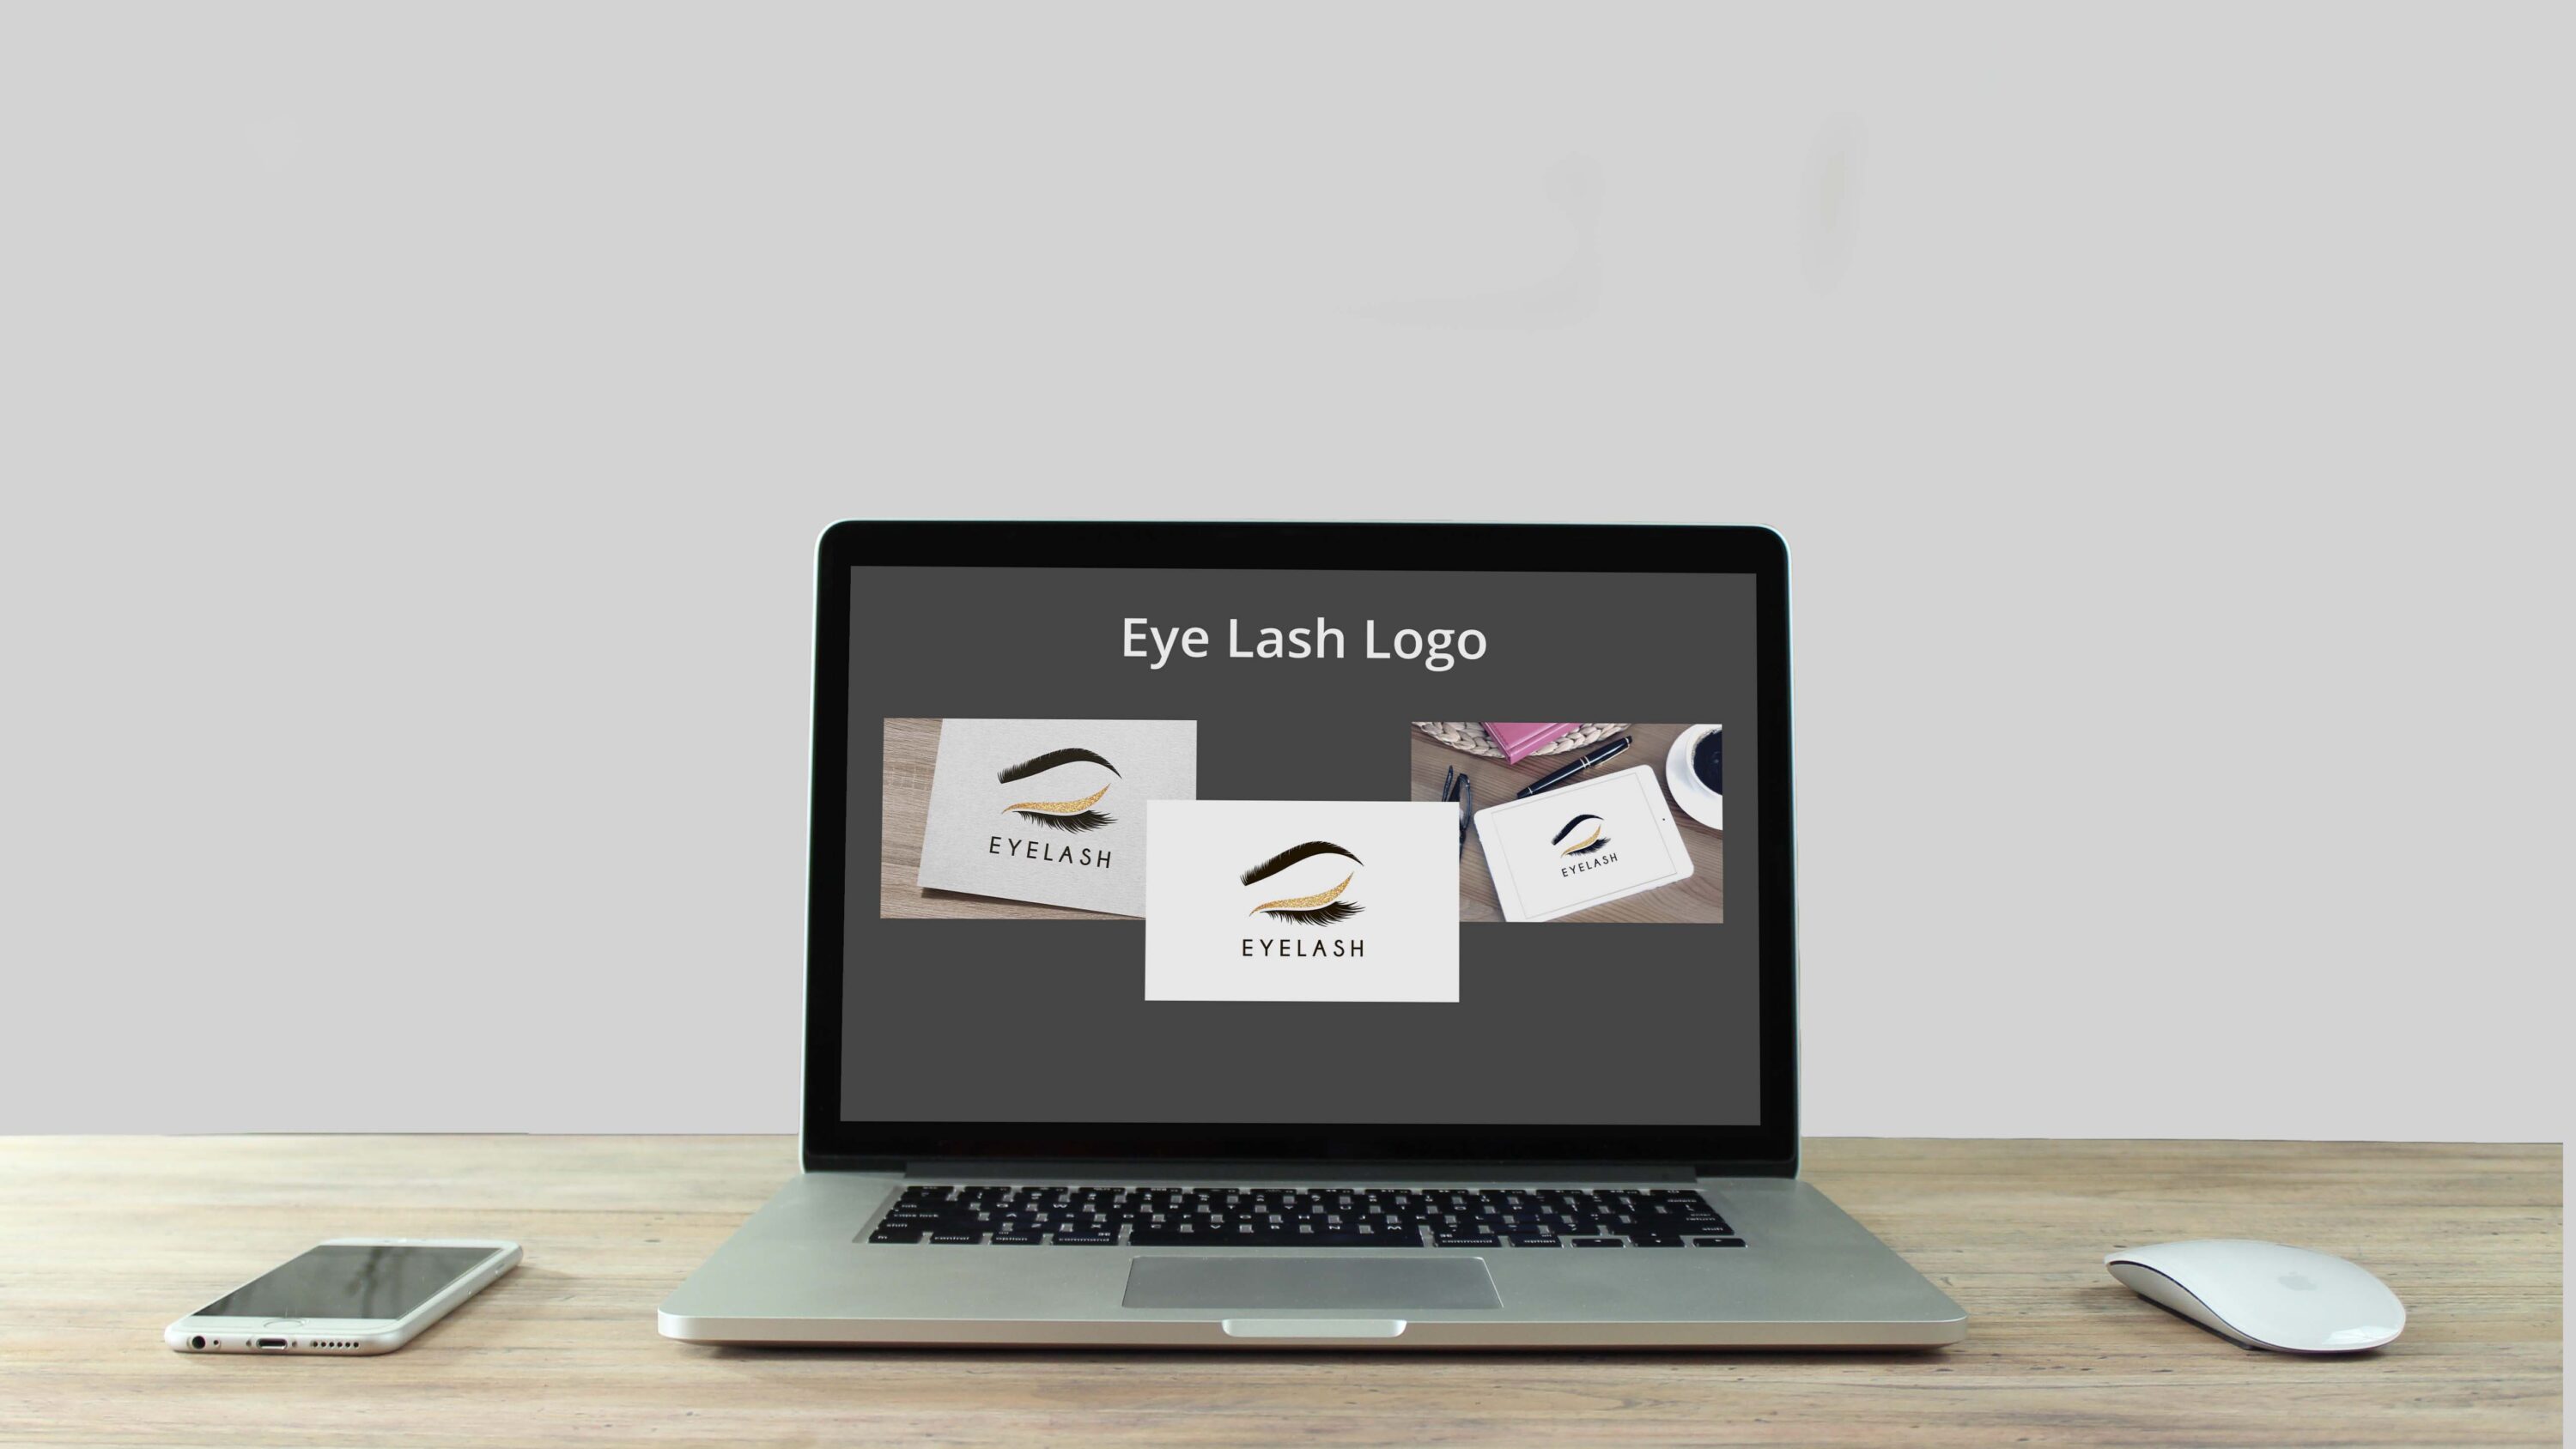 Eye Lash Logo laptop preview.